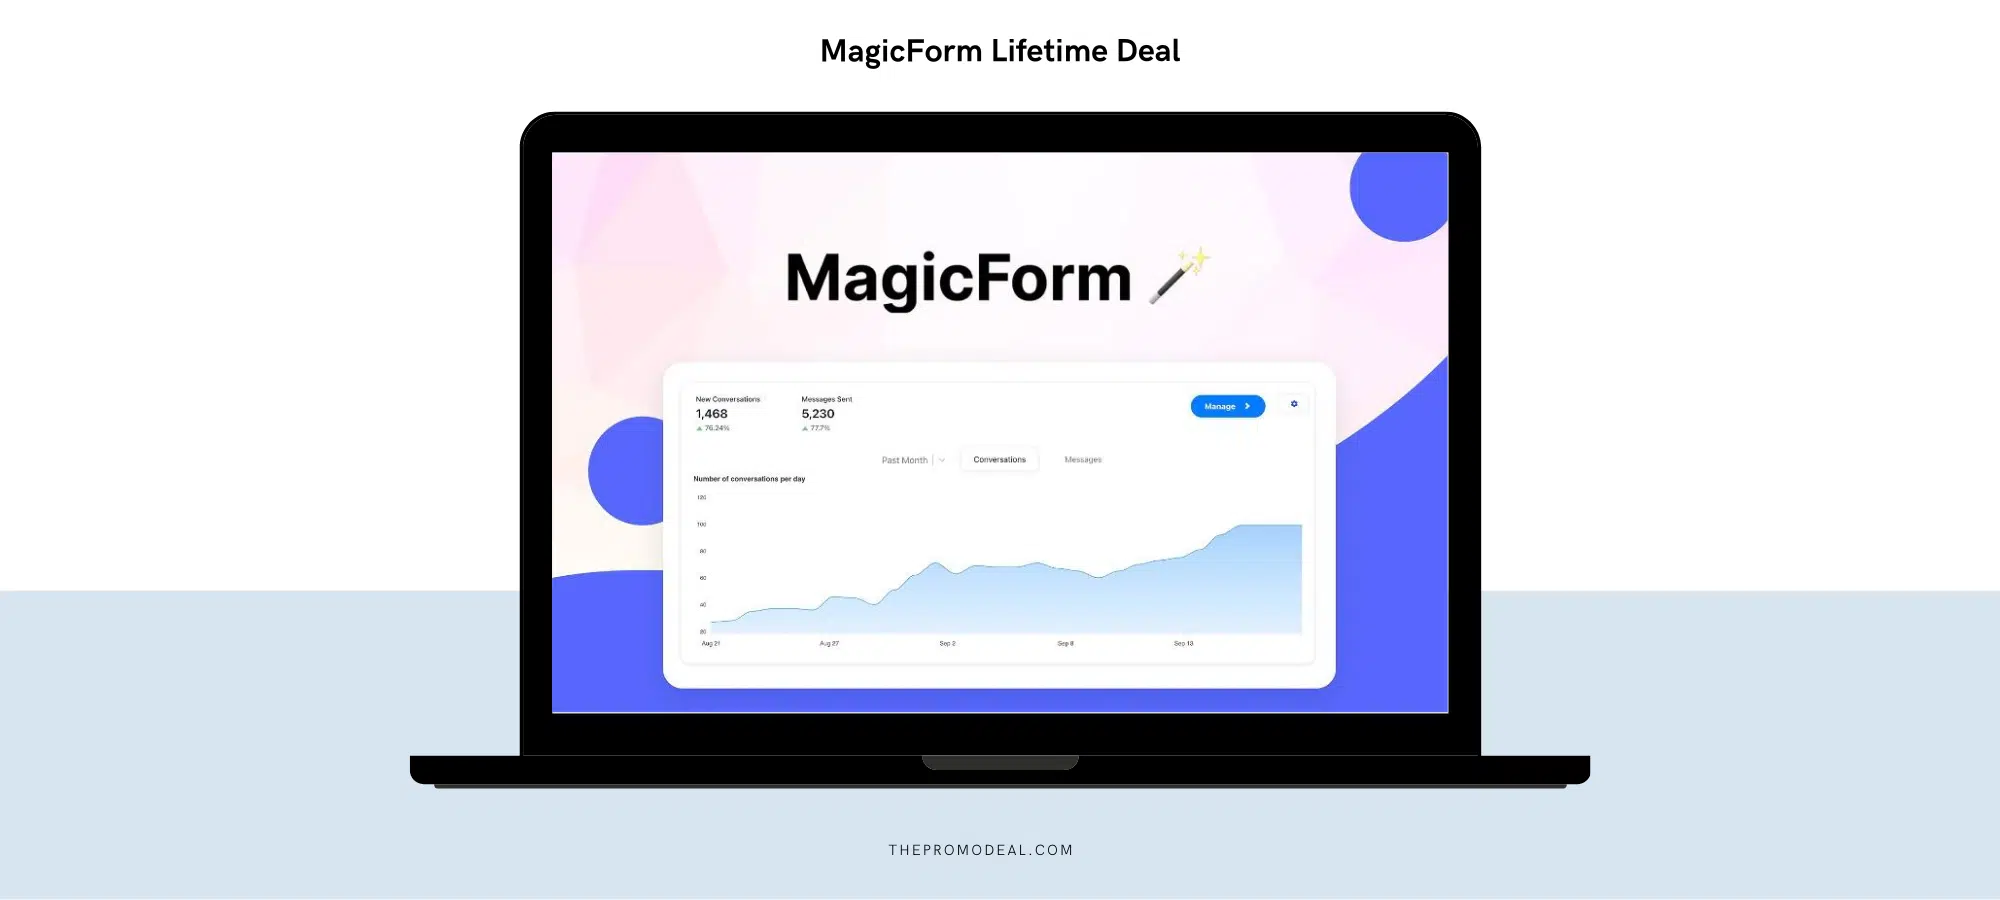 MagicForm Lifetime Deal